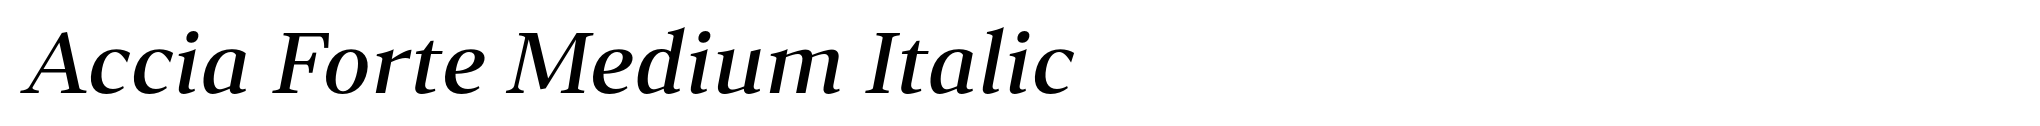 Accia Forte Medium Italic image